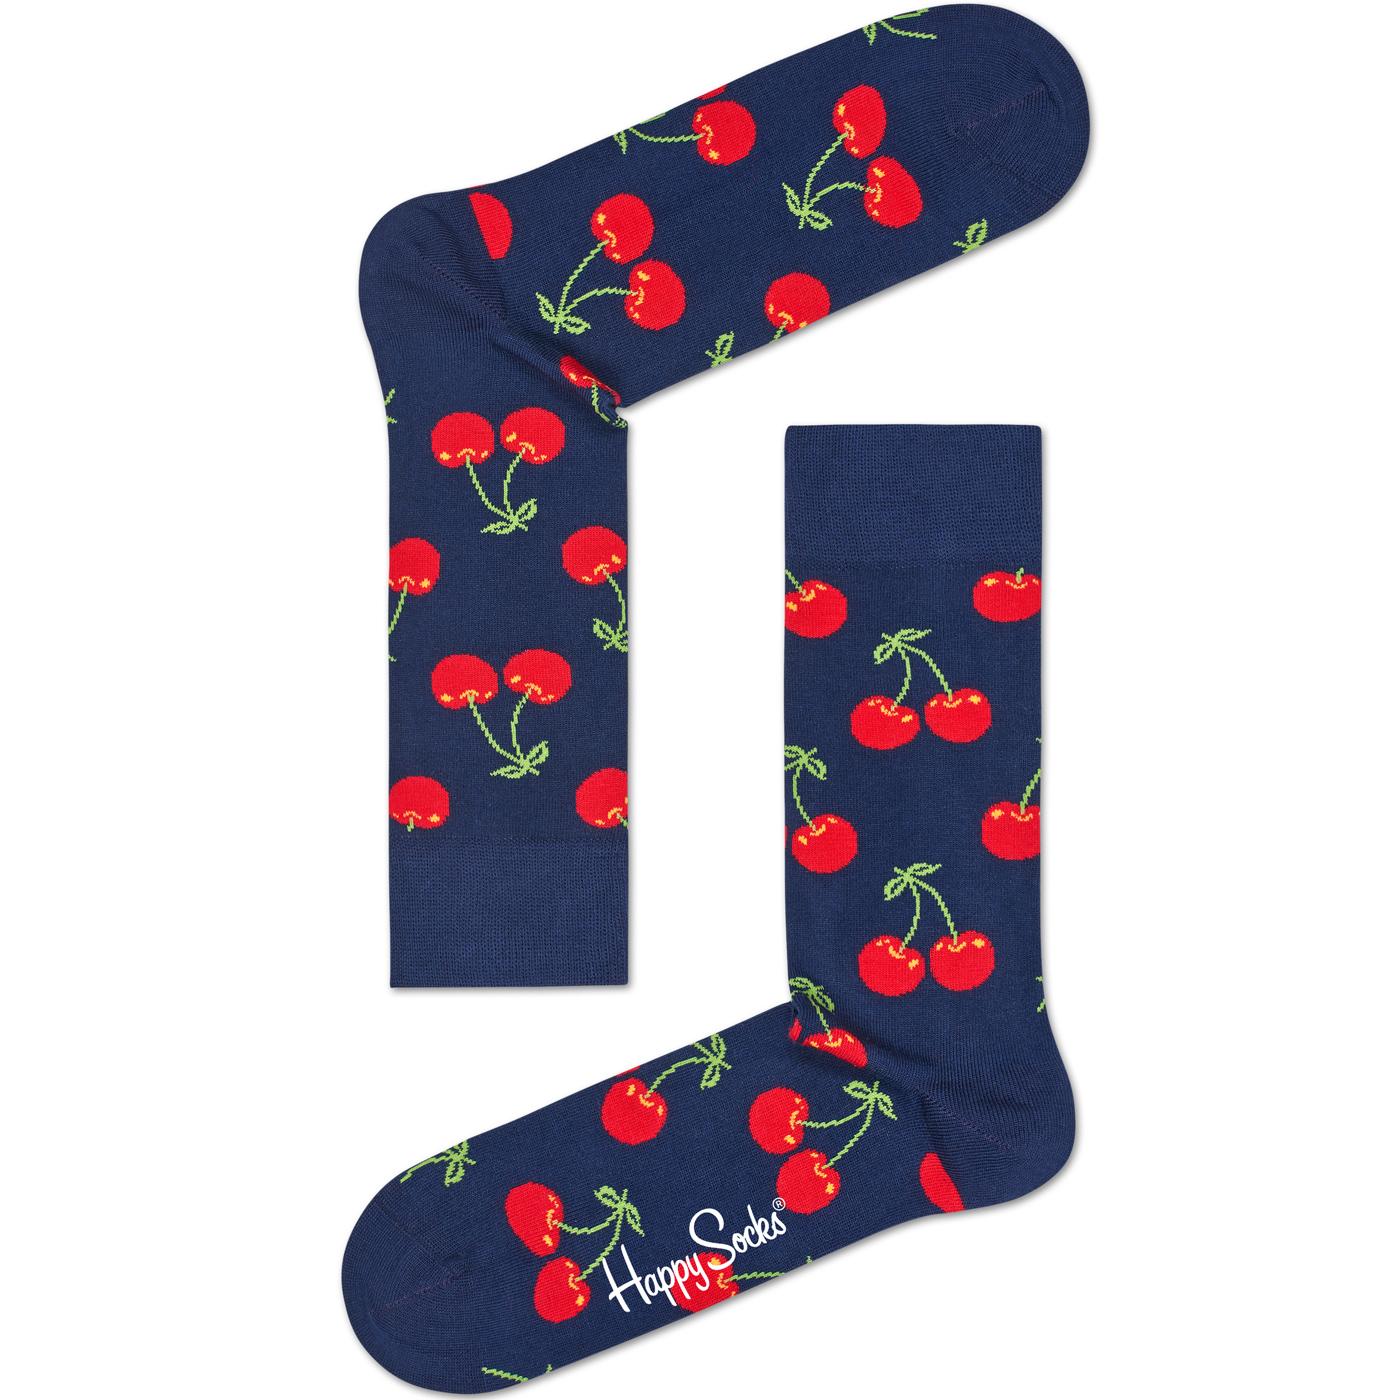 + HAPPY SOCKS Women's Retro Cherry Socks (Navy)